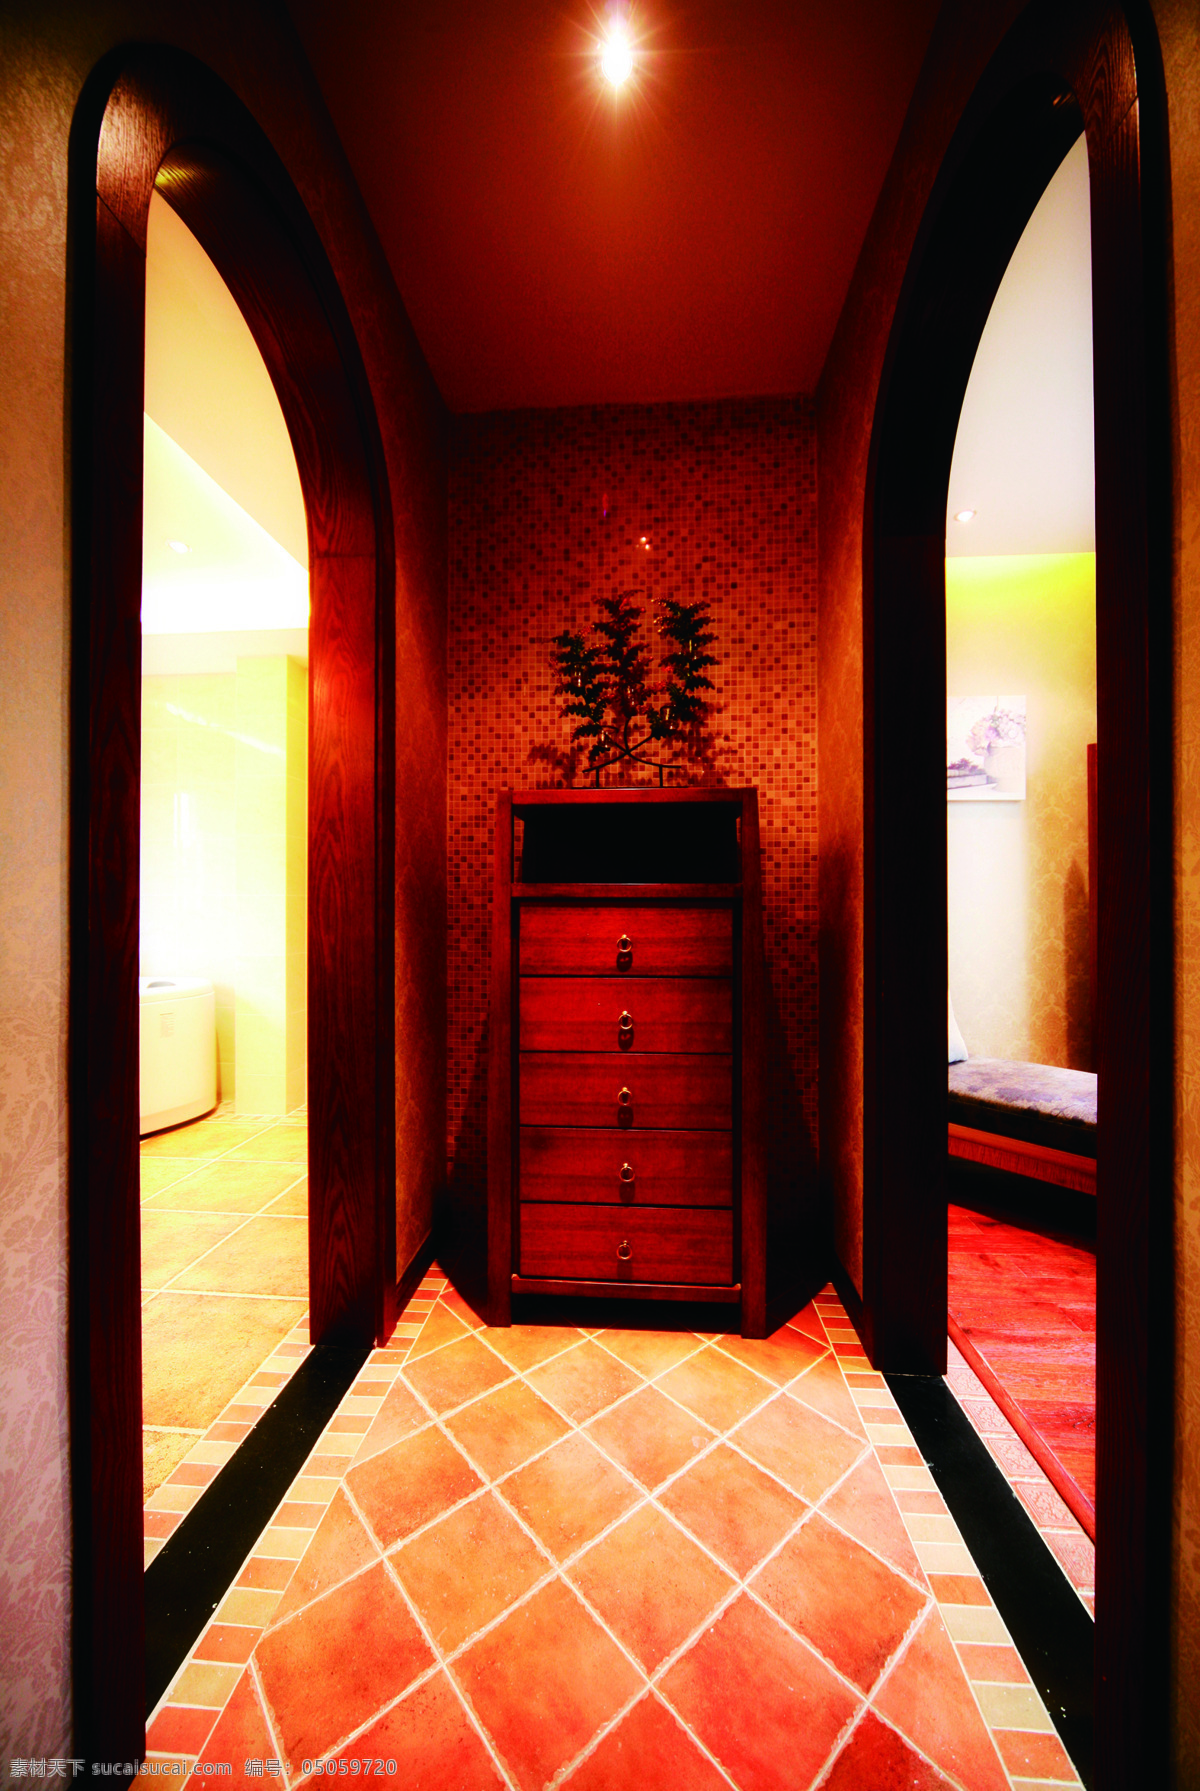 东南亚 暗红色 玄关 室内 装修设计 效果图 盆栽 暗红色灯光 鞋柜 拱门状 菱形条纹地板